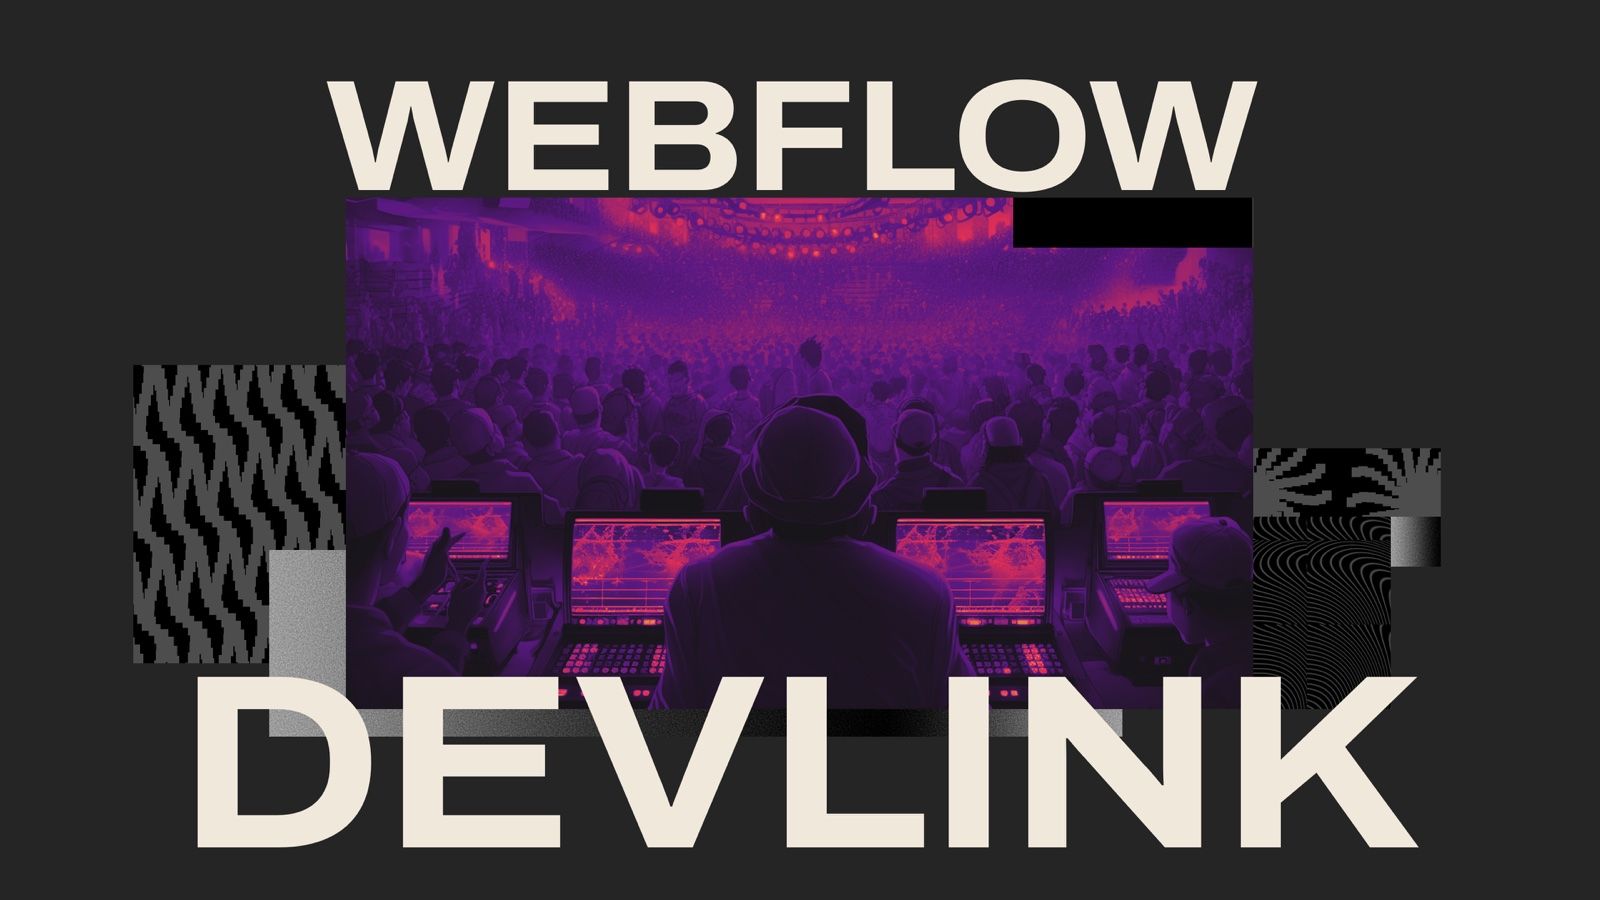 令人興奮的 Webflow 新功能 DevLink: 製作 React 組件